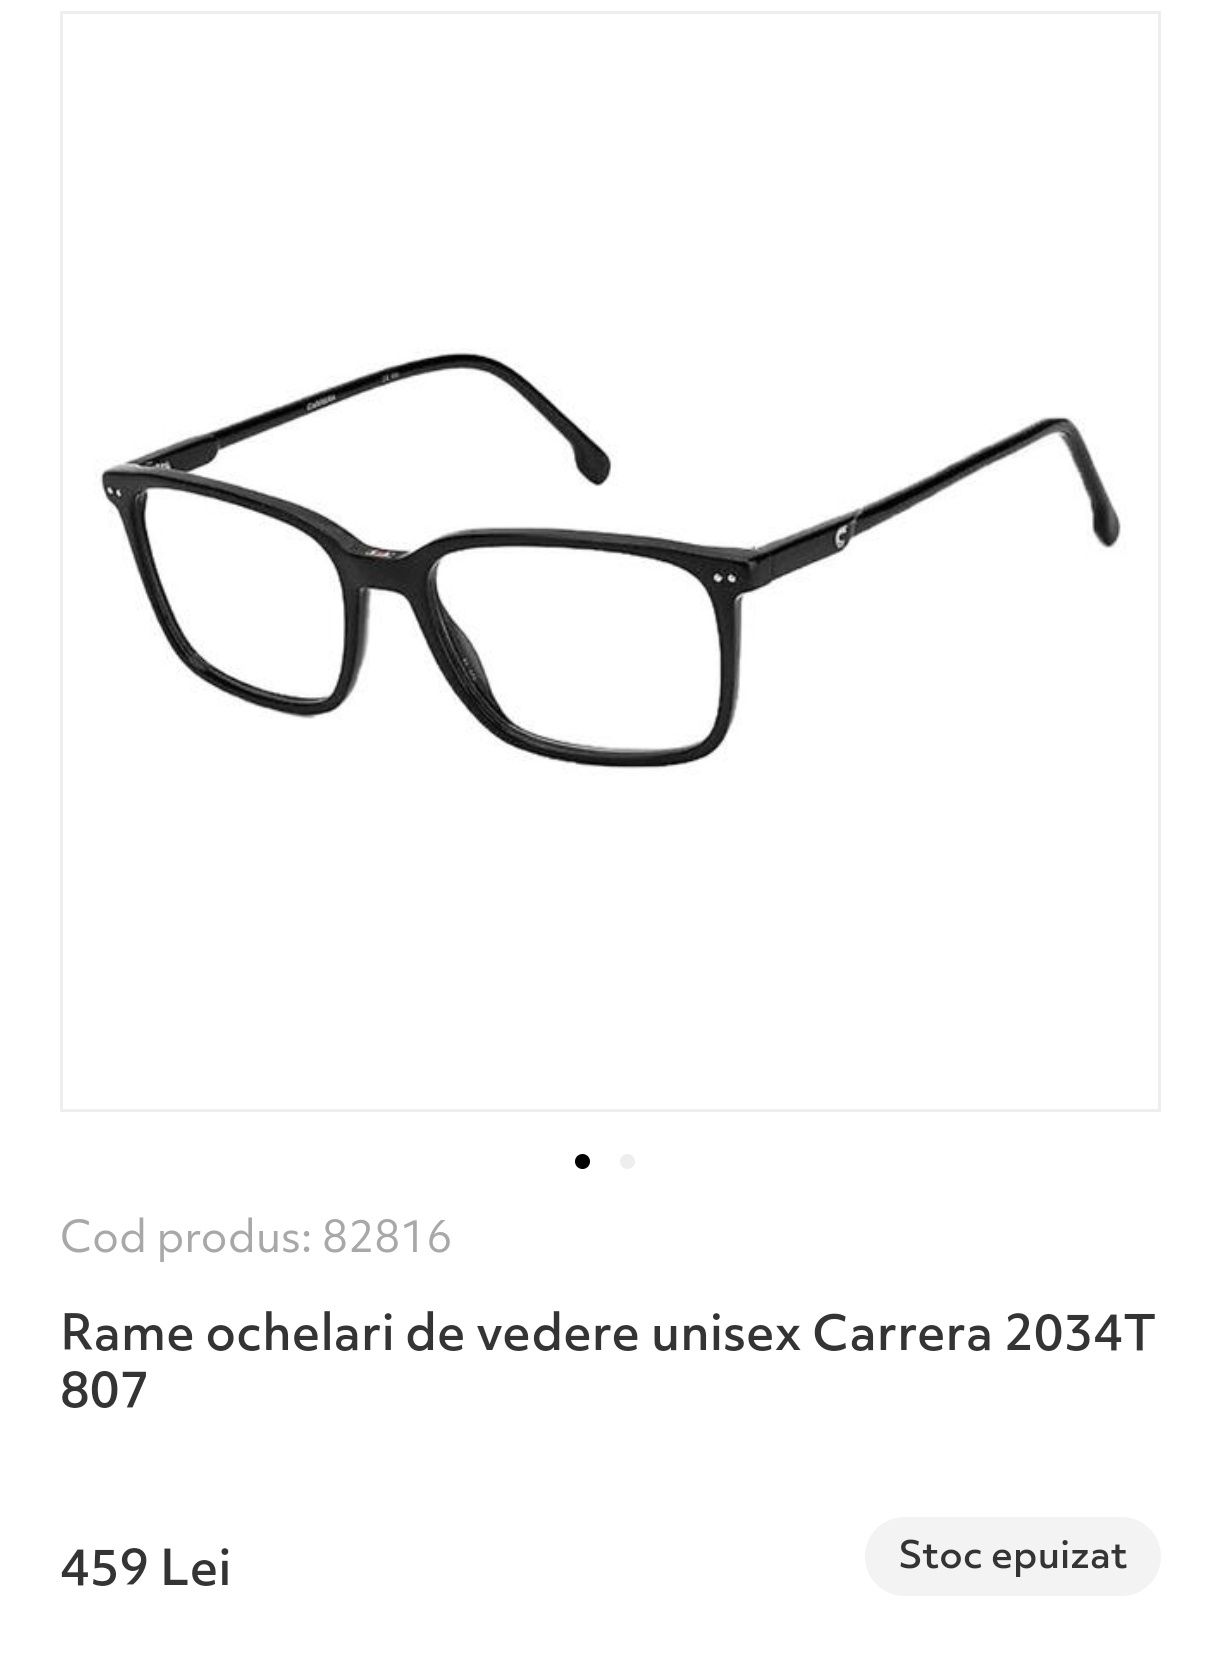 Rama ochelari Carrera Ubisex 52-135-17